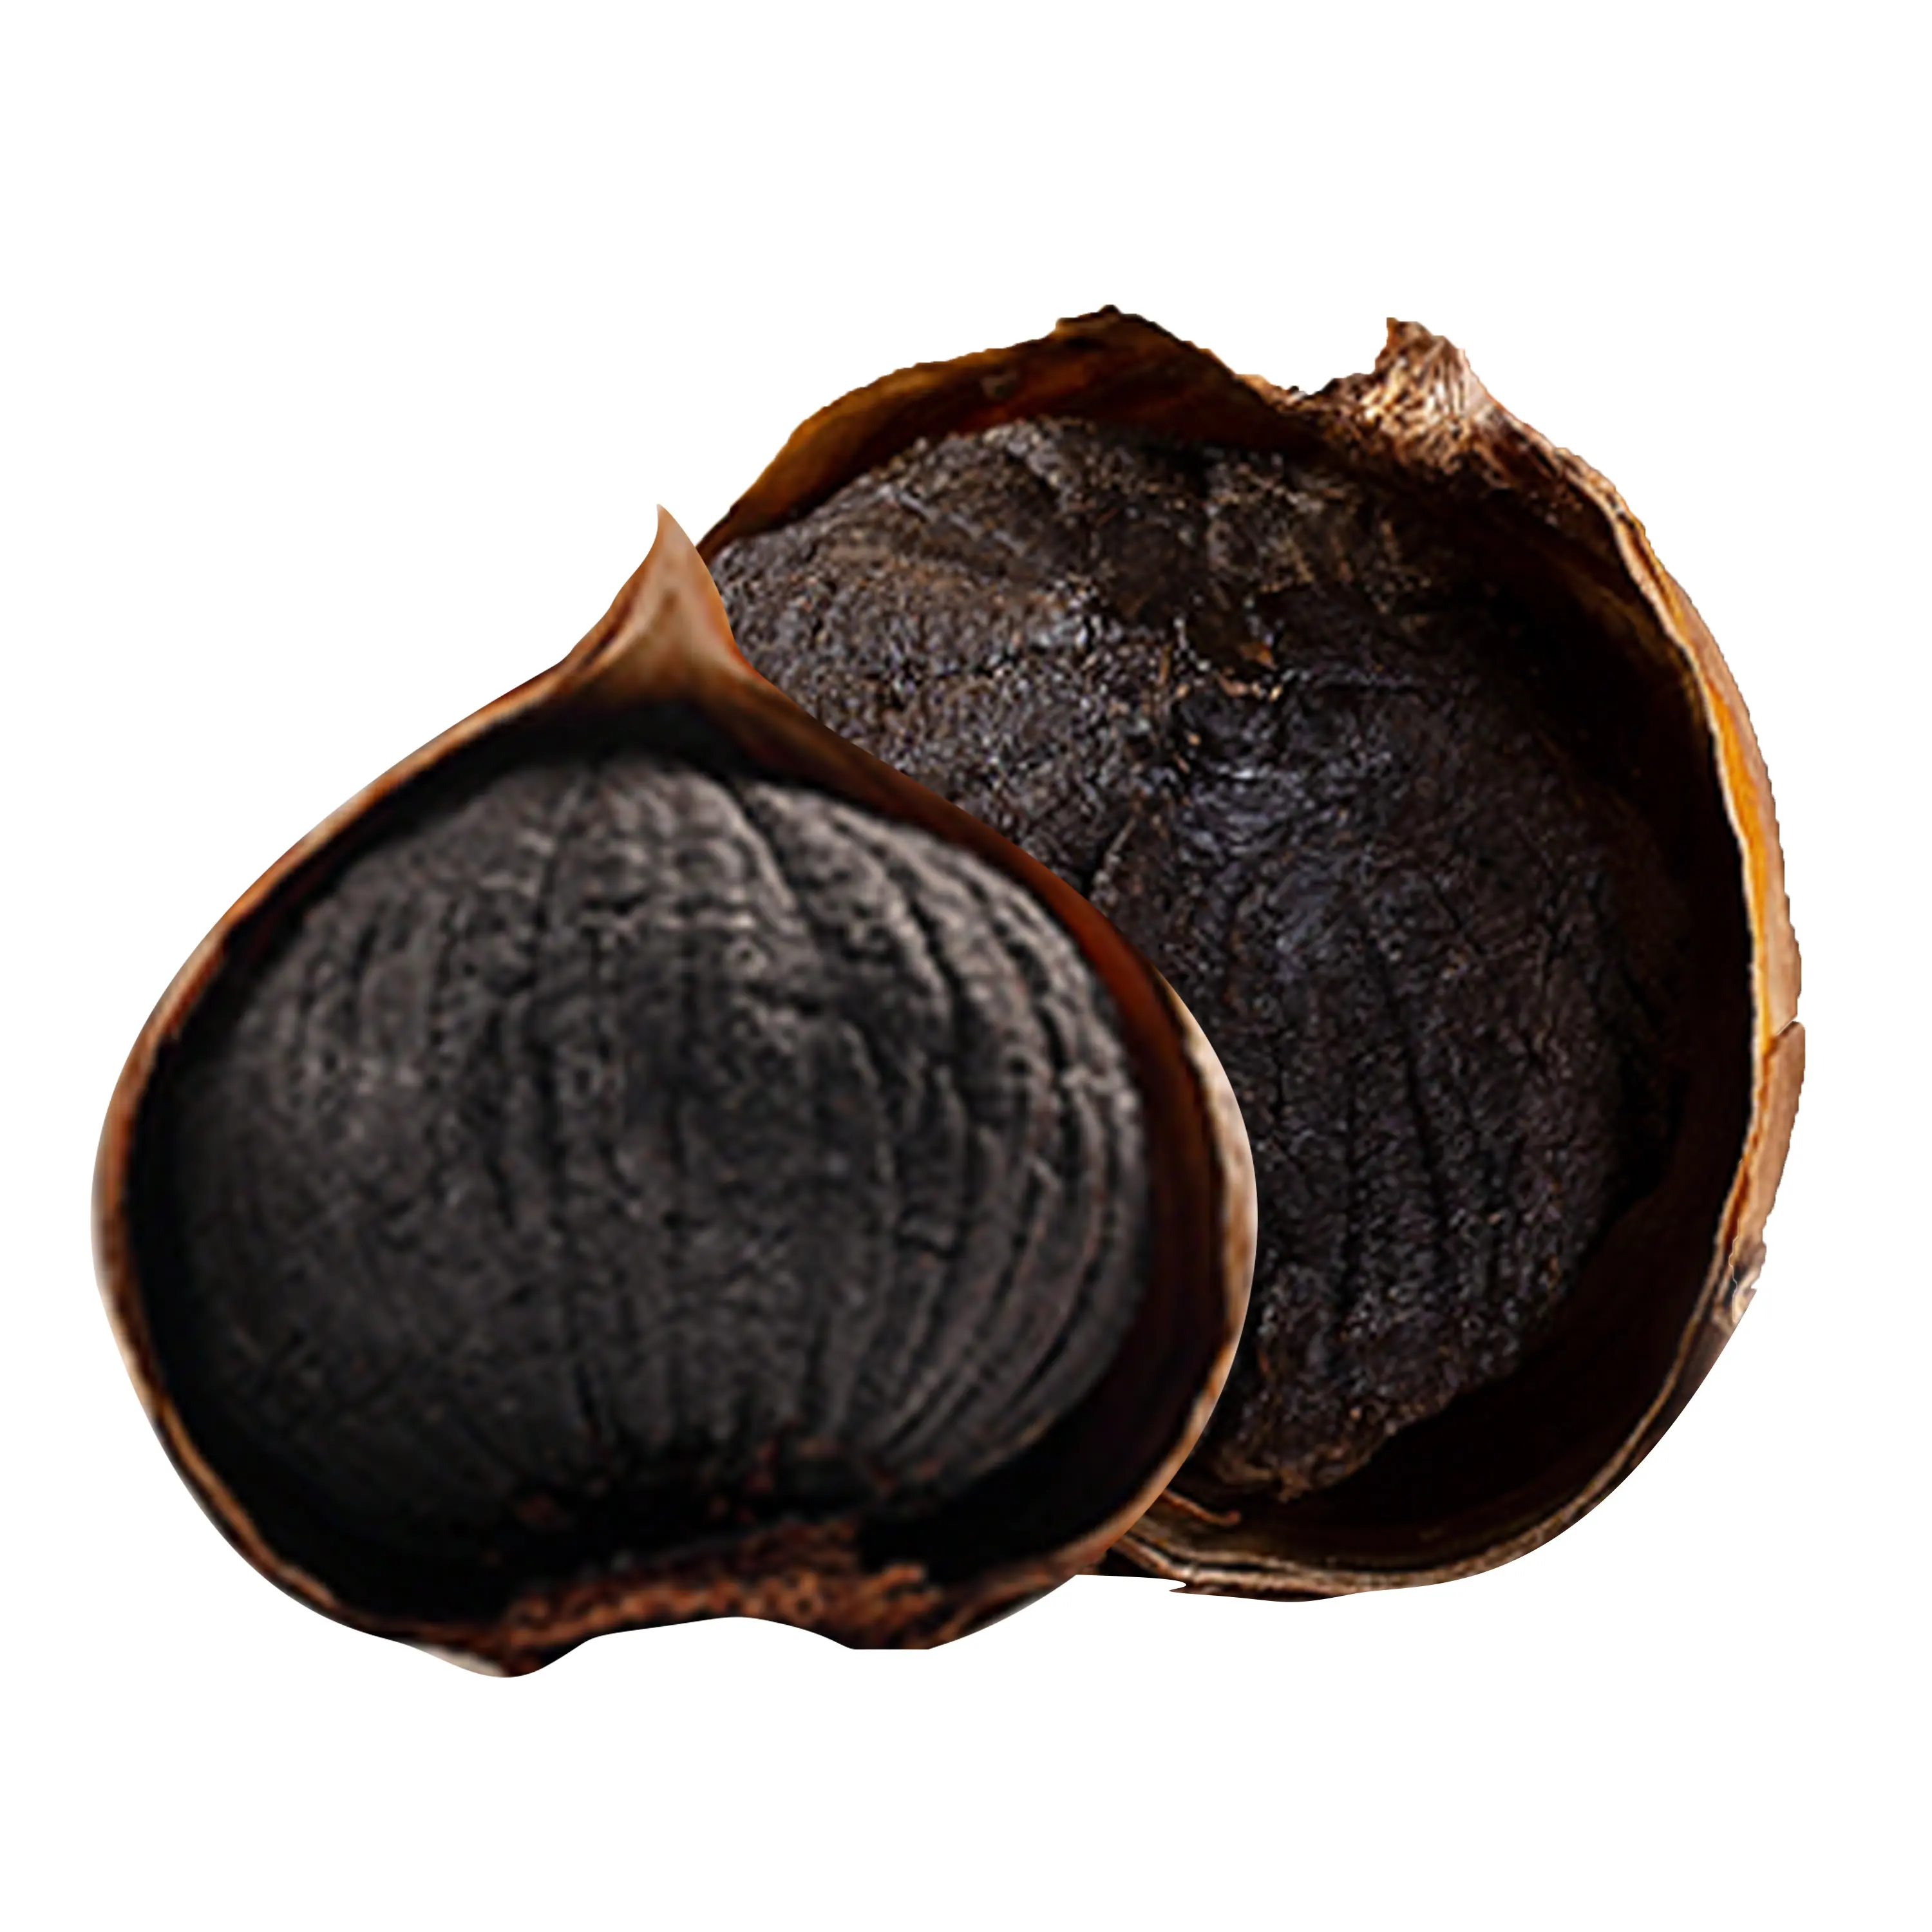 Alho preto fermentado natural premium Alho preto de cabeça única Alho preto chinês